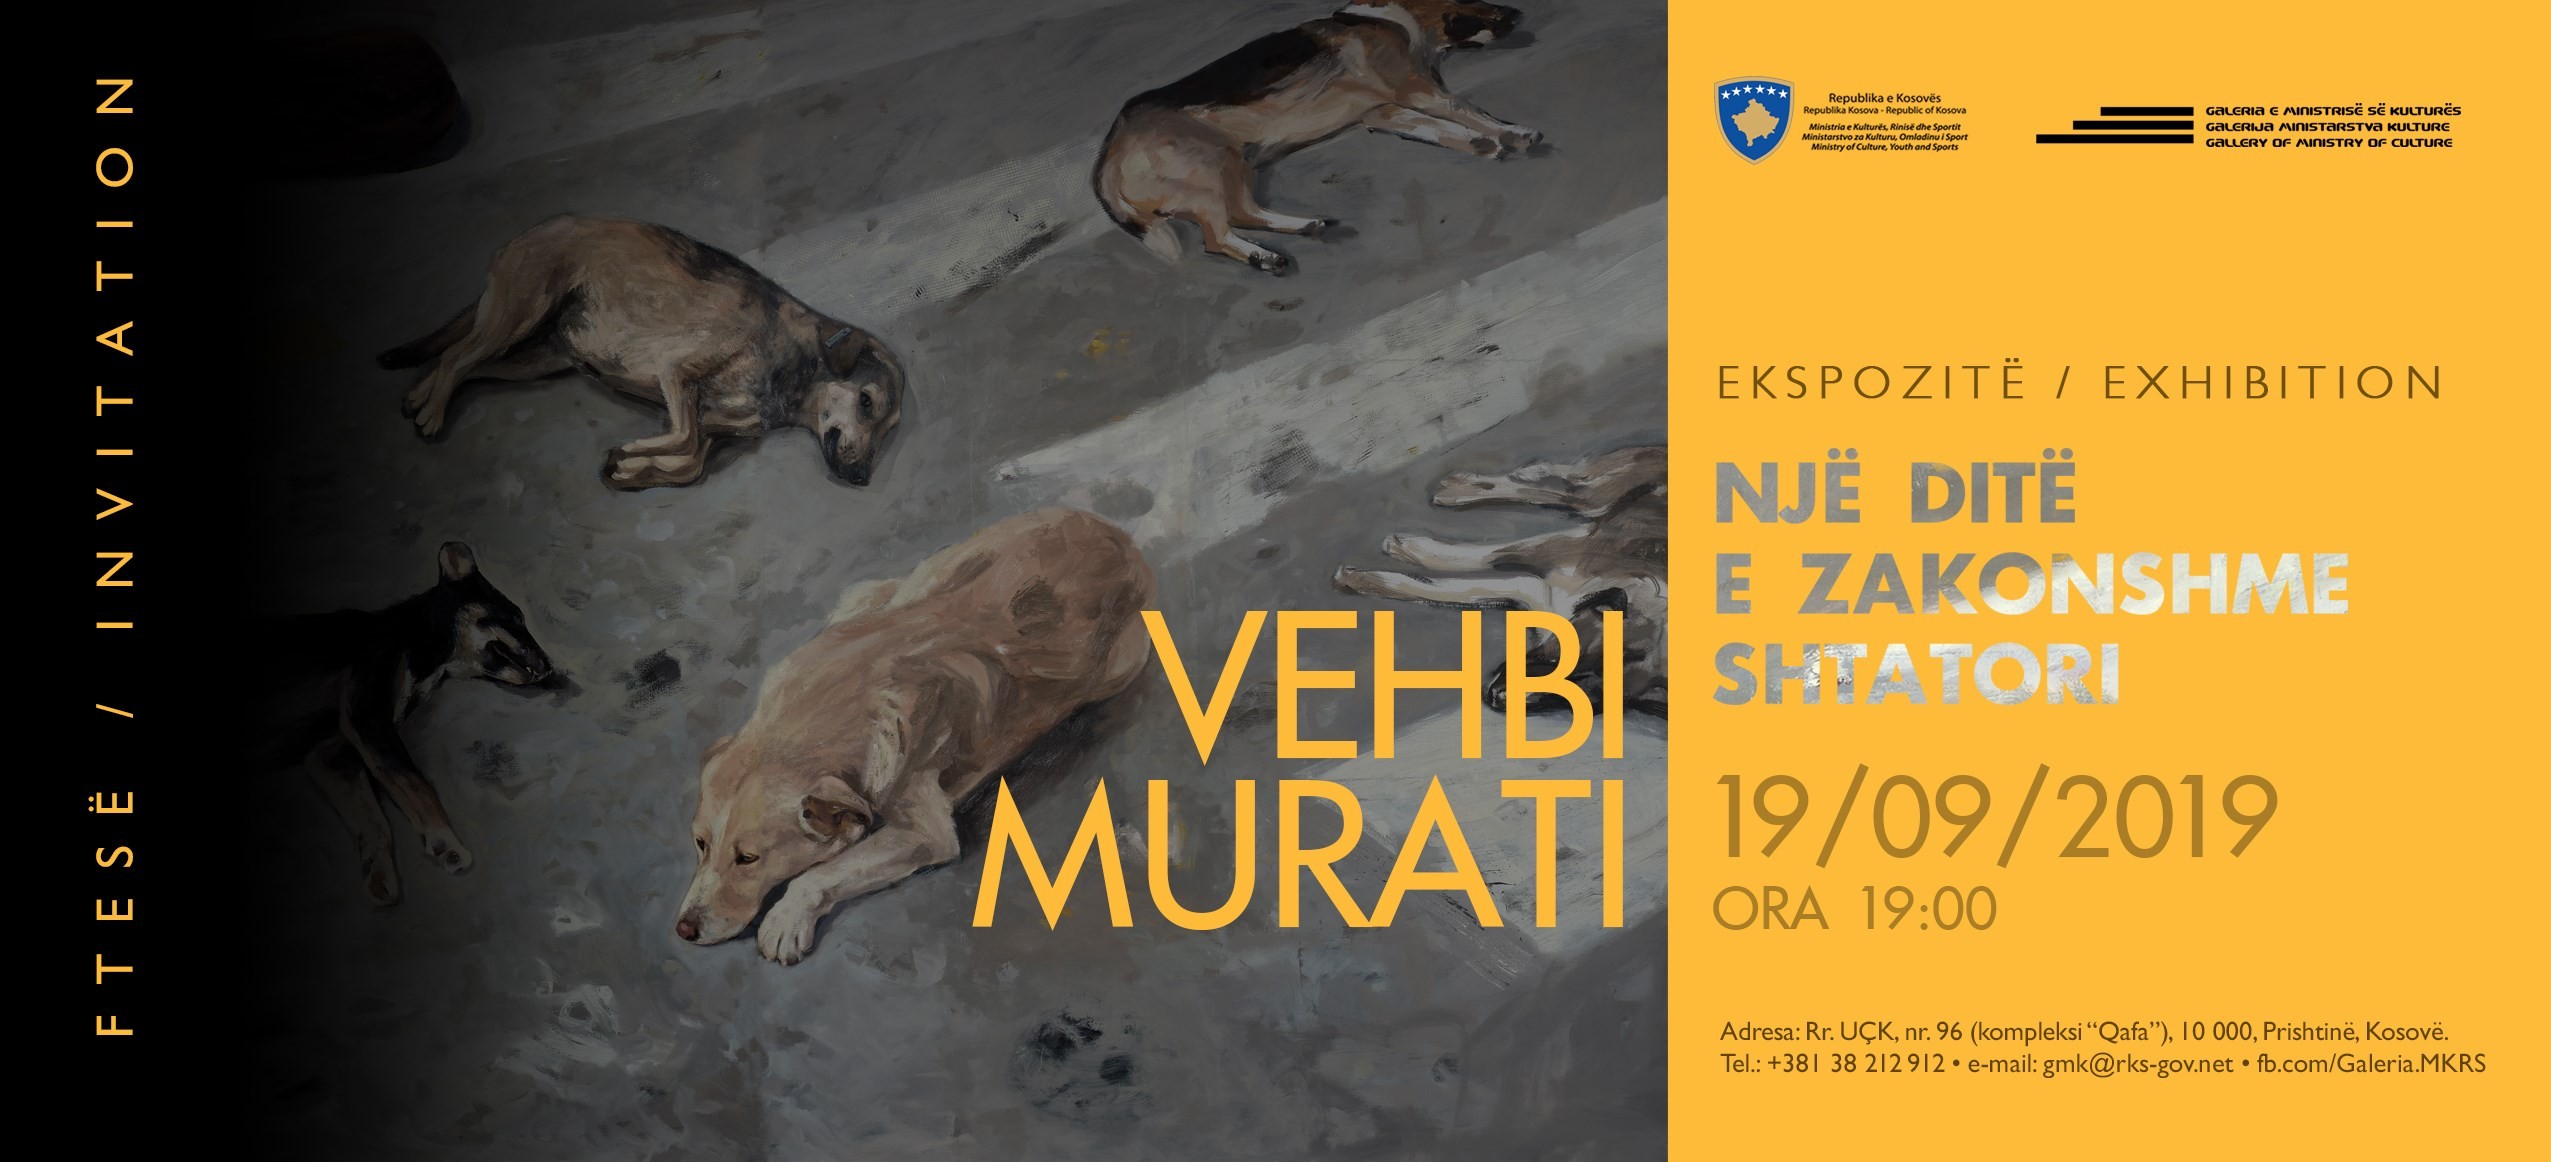 Hapet ekspozita e Vehbi Murati e titulluar “Një ditë e zakonshme shtatori”